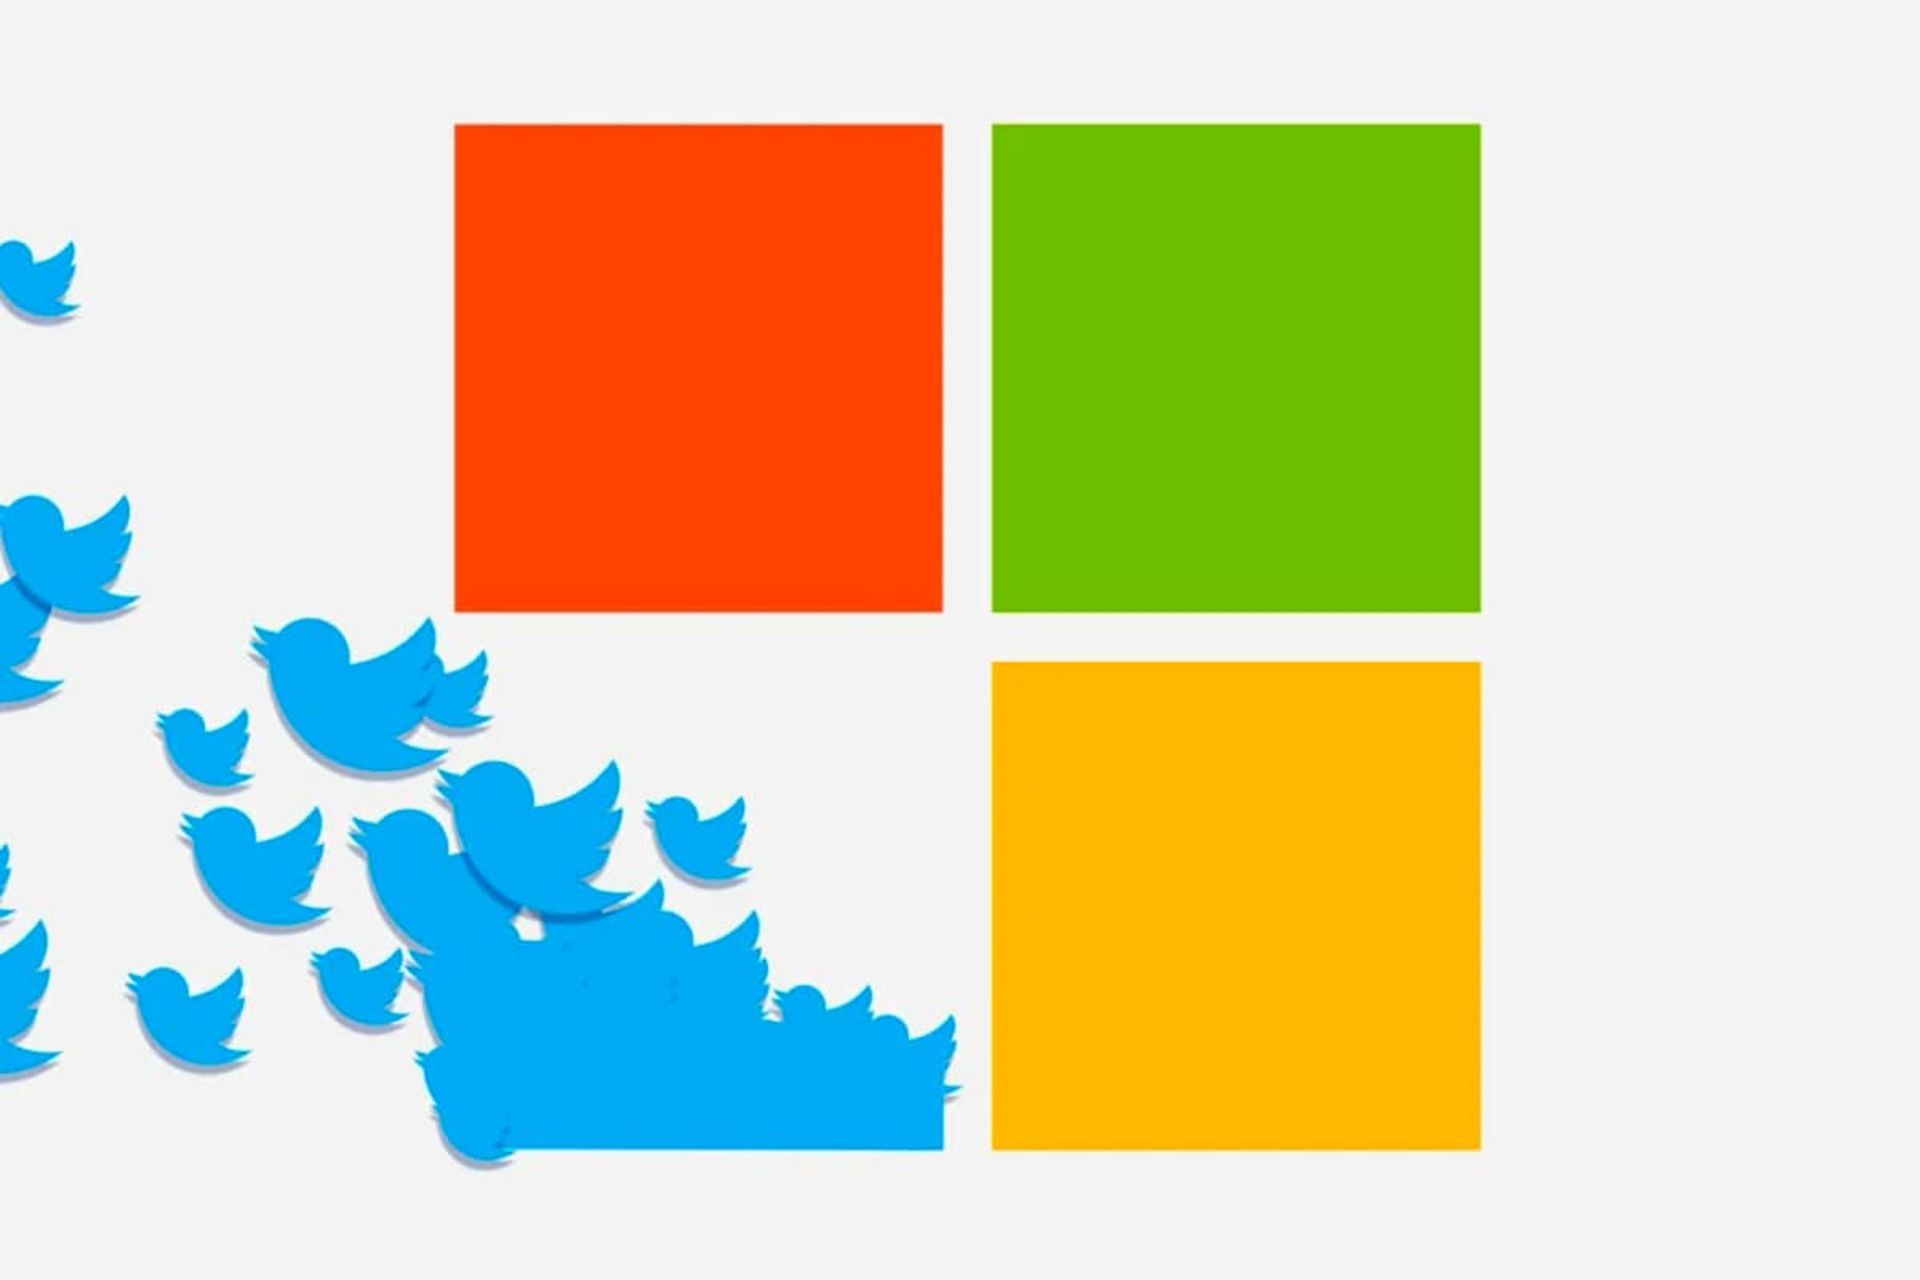 لوگو مایکروسافت با پرنده آبی توییتر